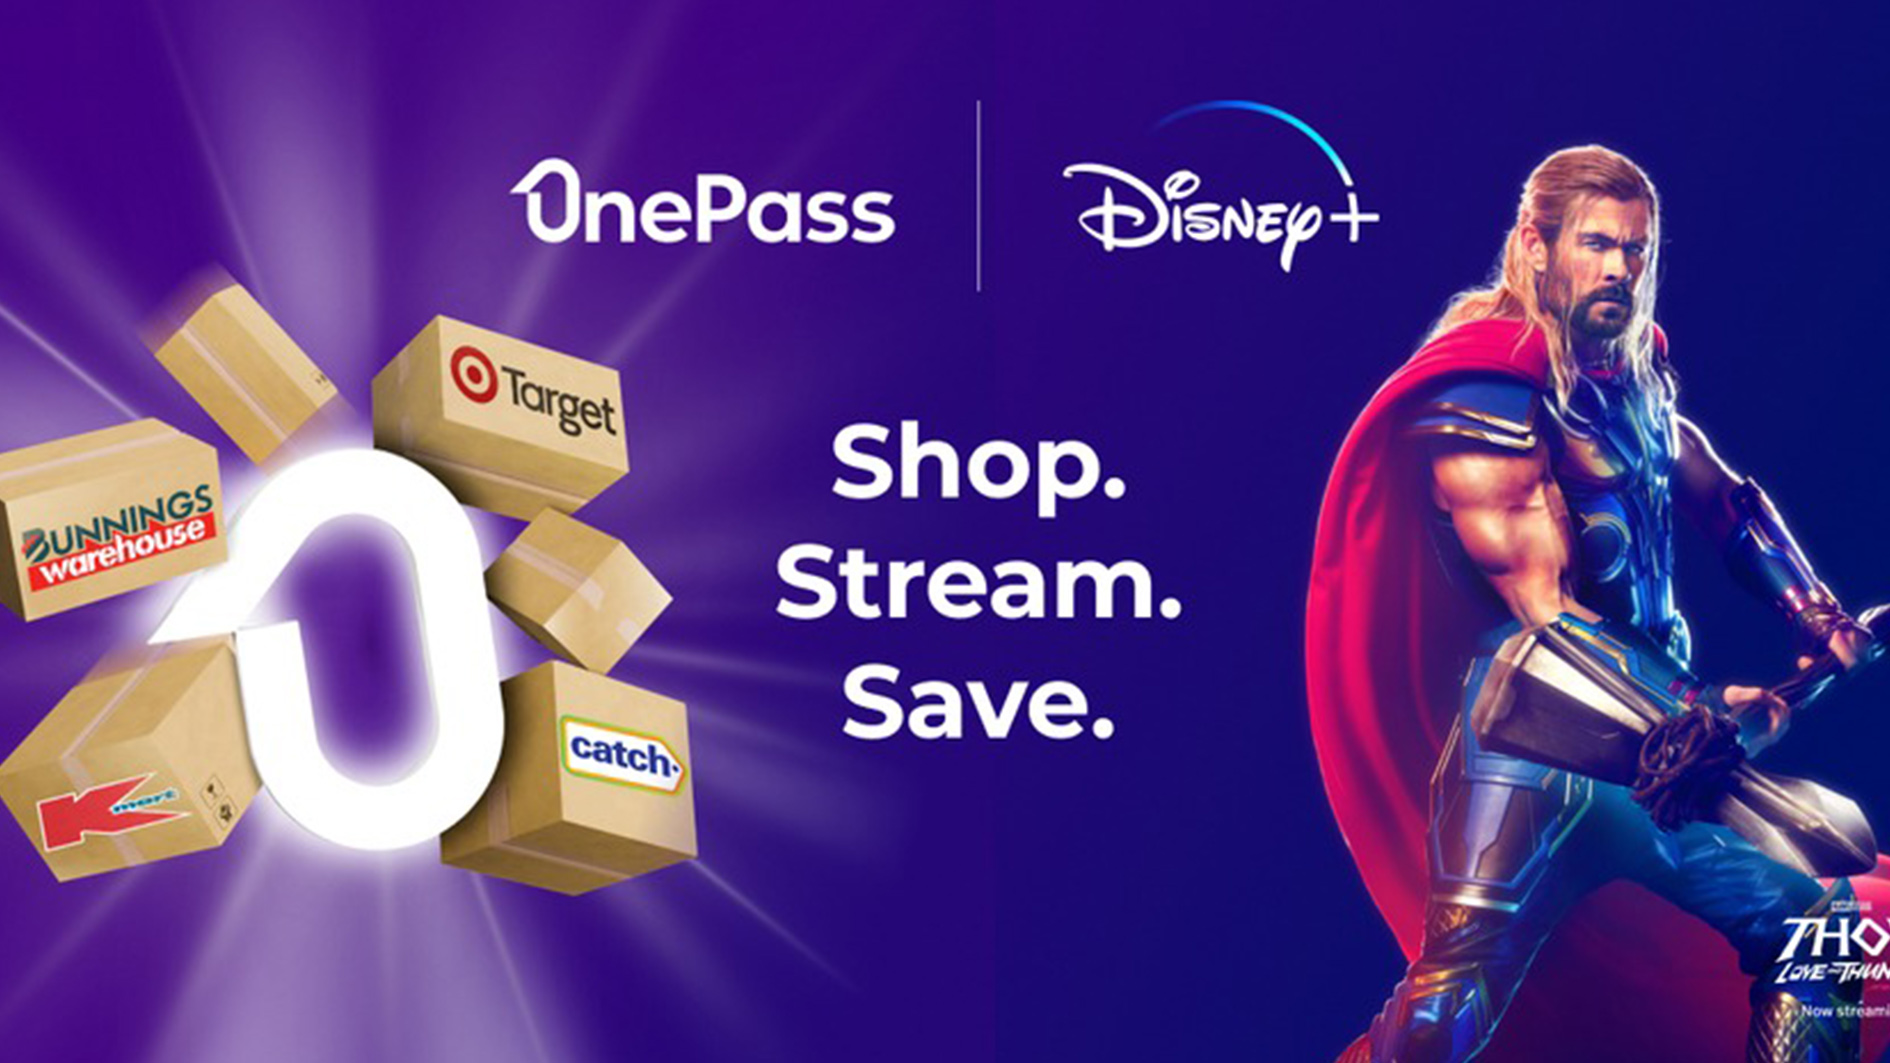 OnePass perakendeci logolarını gösteren kutularla çevrelenmiş, OnePass ve Disney Plus logolu Thor'un resmi